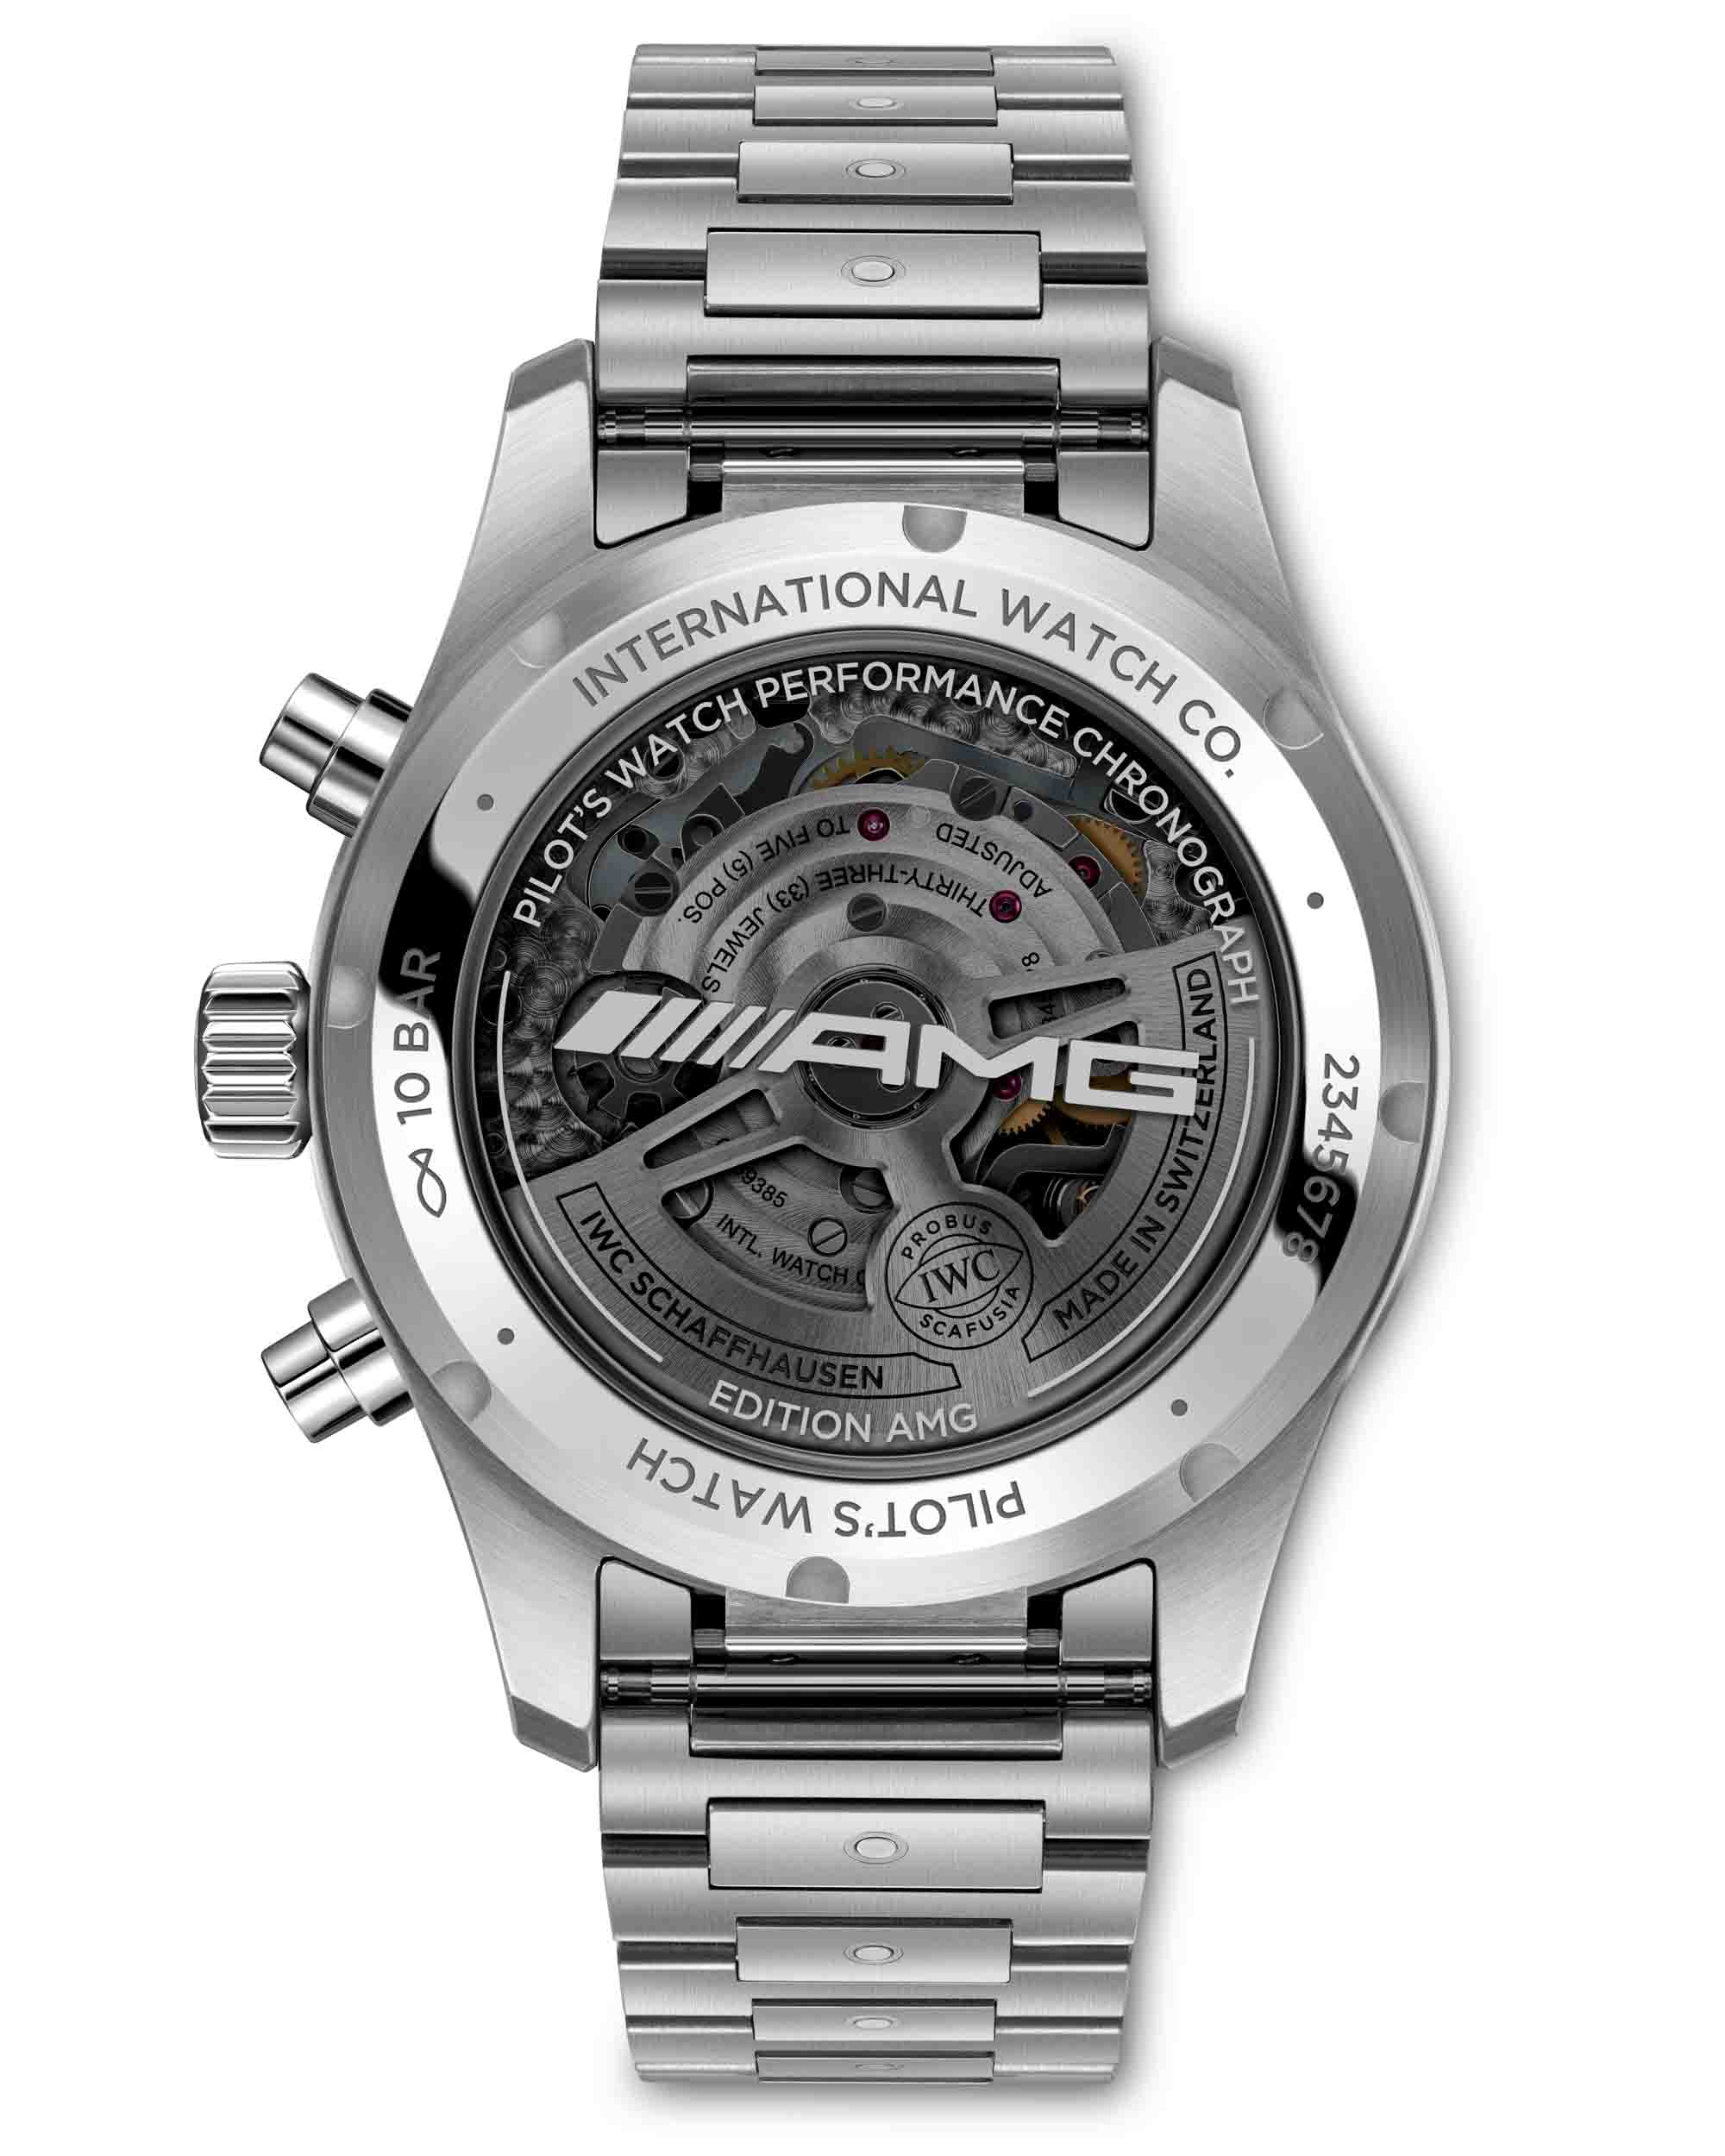 Новый релиз: Часы IWC Pilot's Watch Performance Chronograph 41 AMG и Mercedes-AMG Petronas Formula One Team